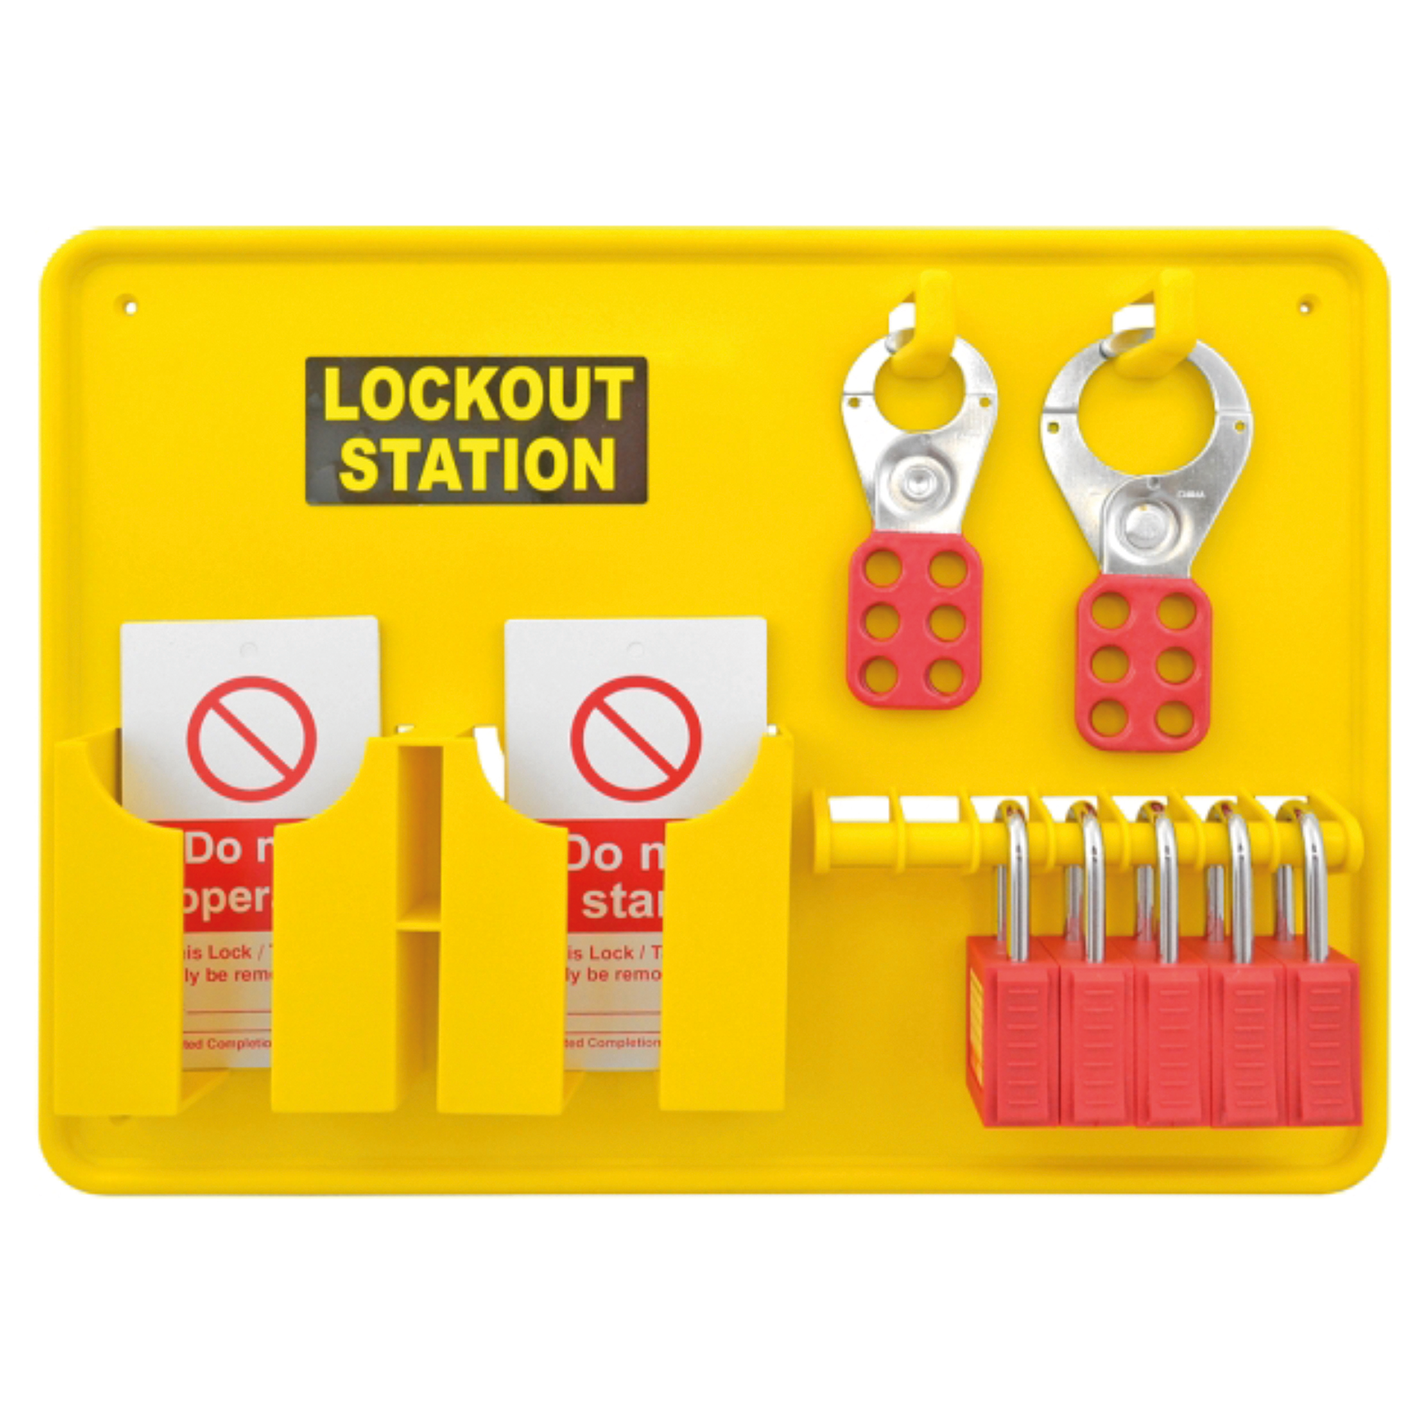 5 Station Lockout Kit